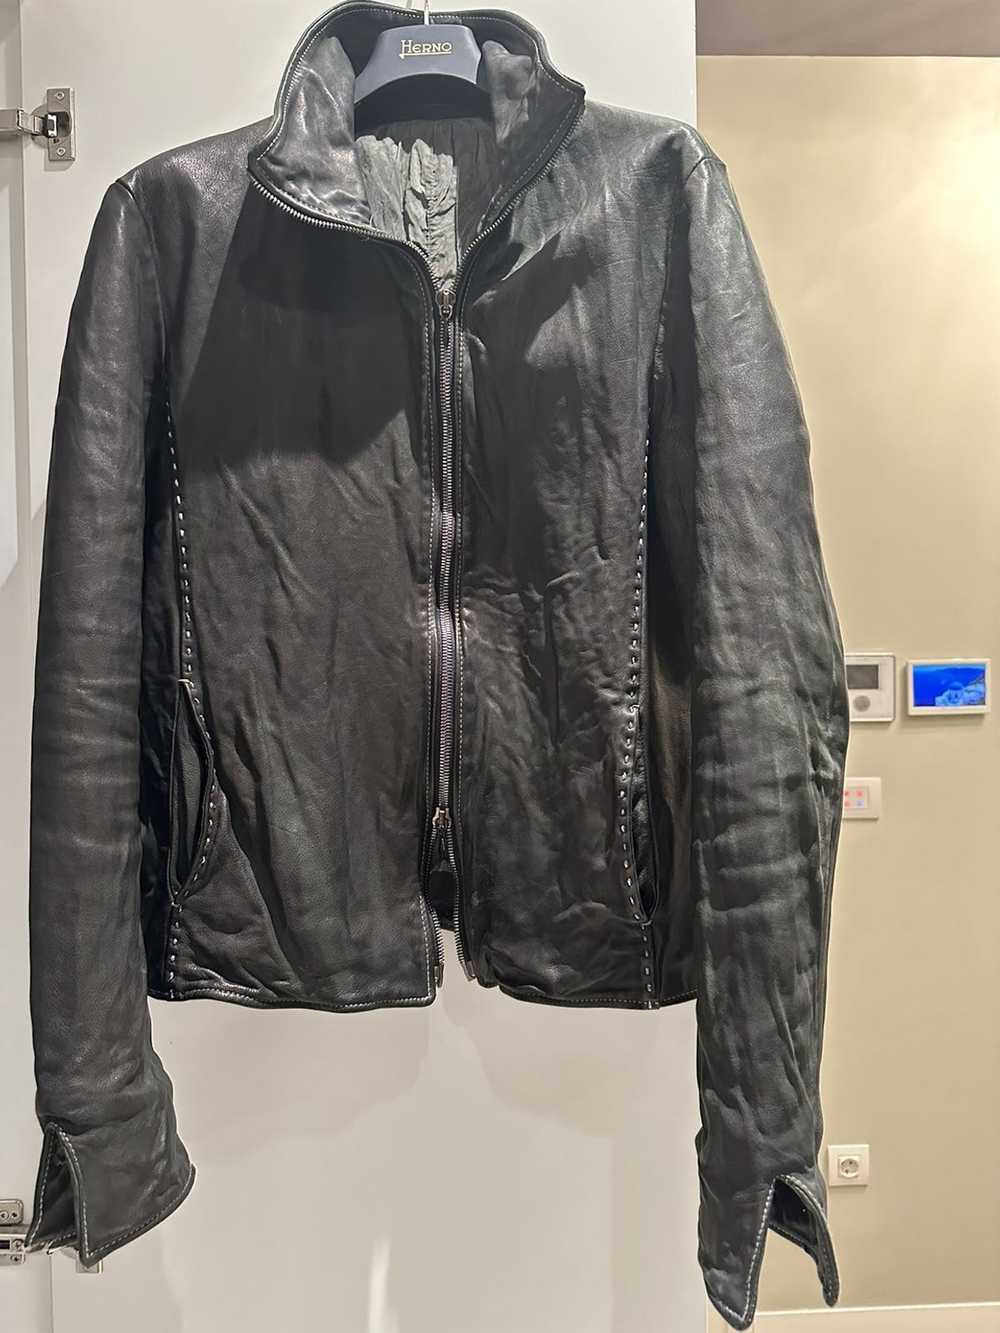 Incarnation Incarnation leather jacket - image 12